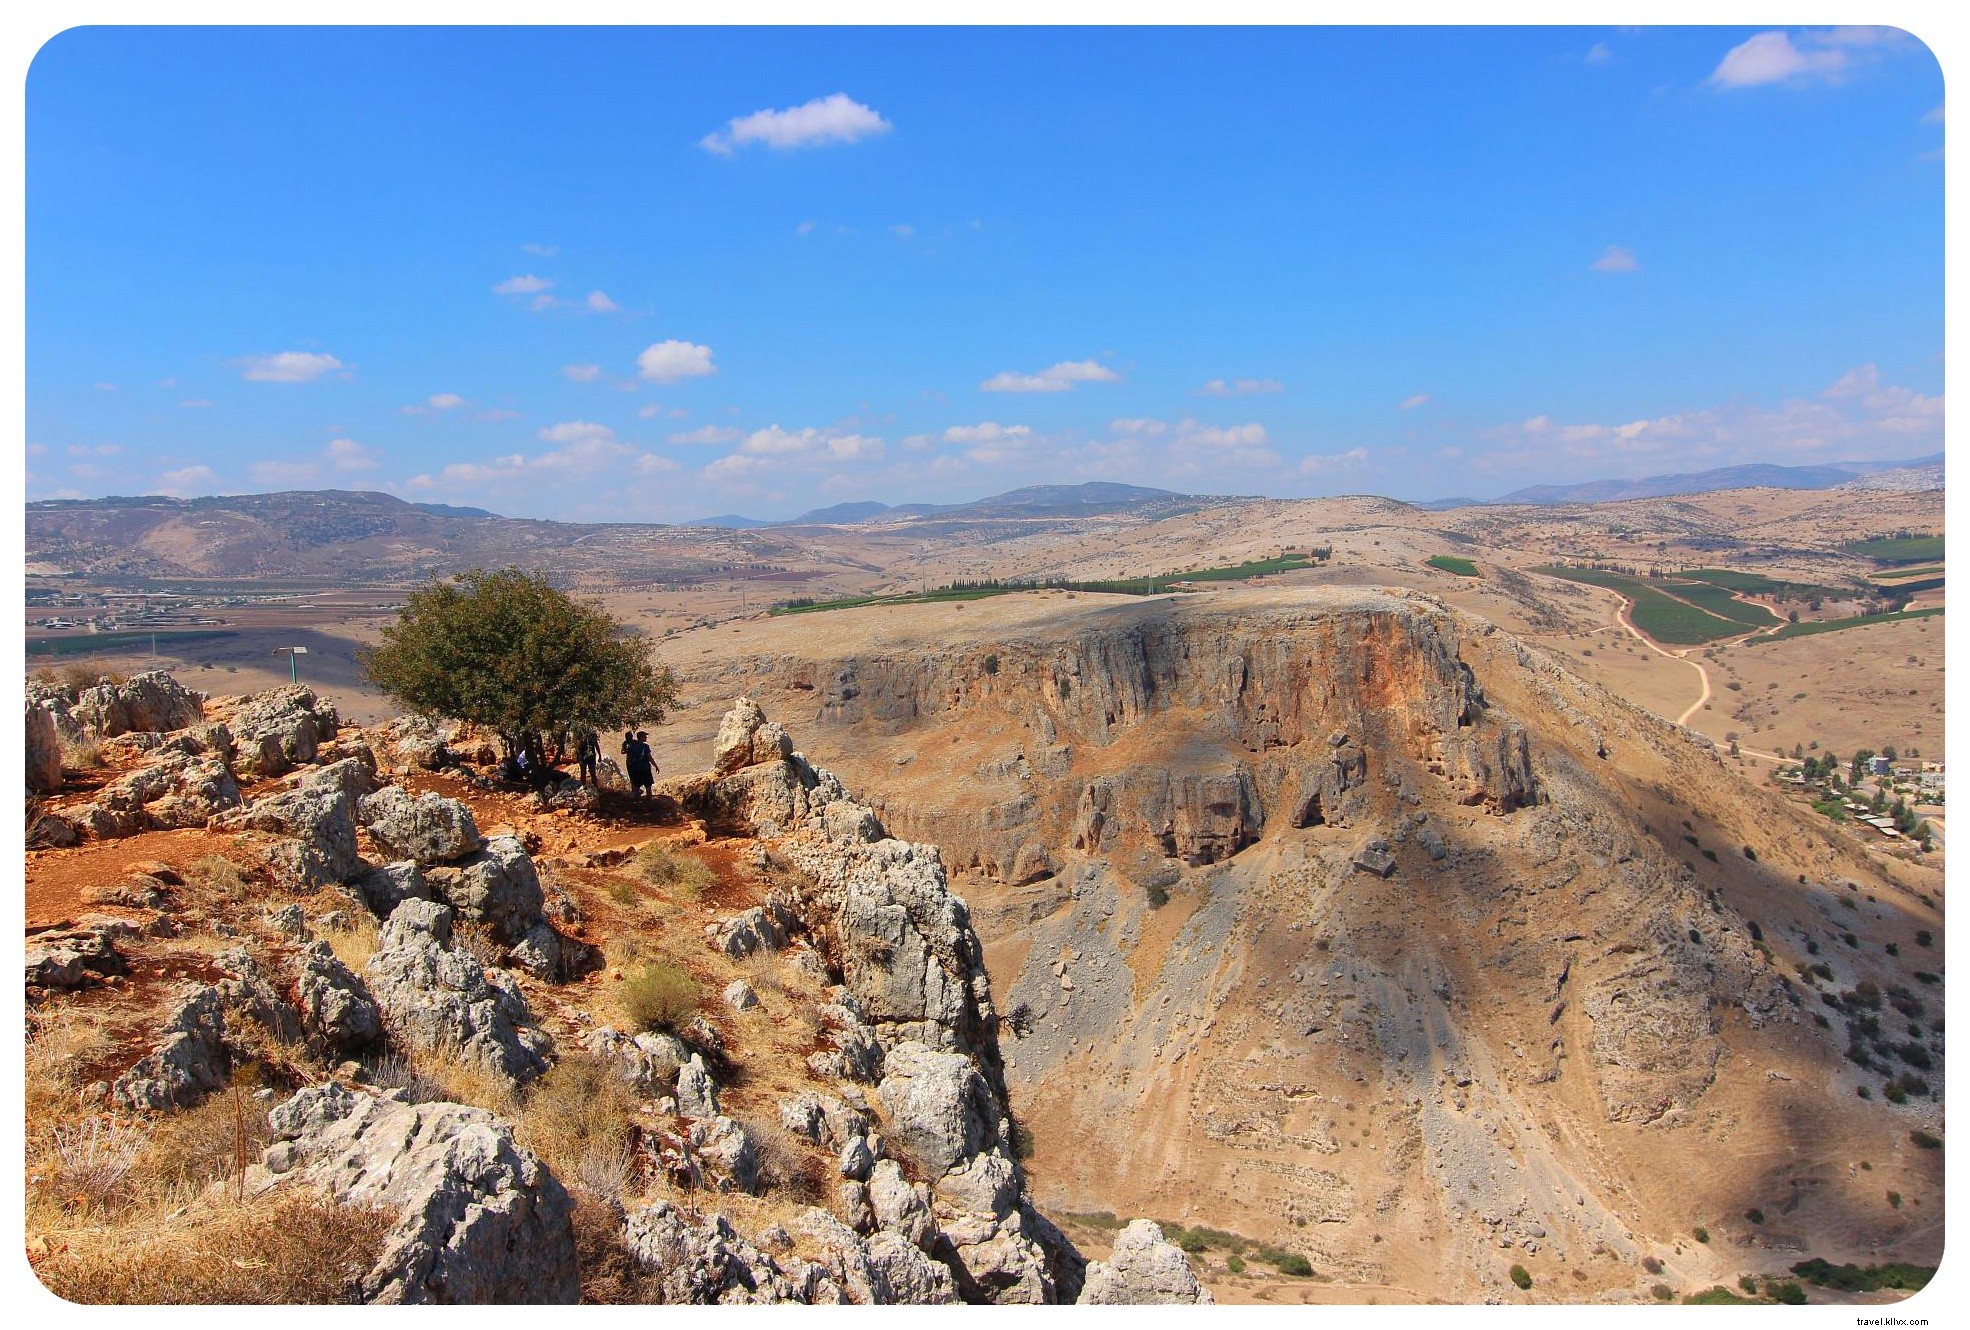 Viagem de aventura em Israel:Caminhando pela trilha nacional (Parte II)